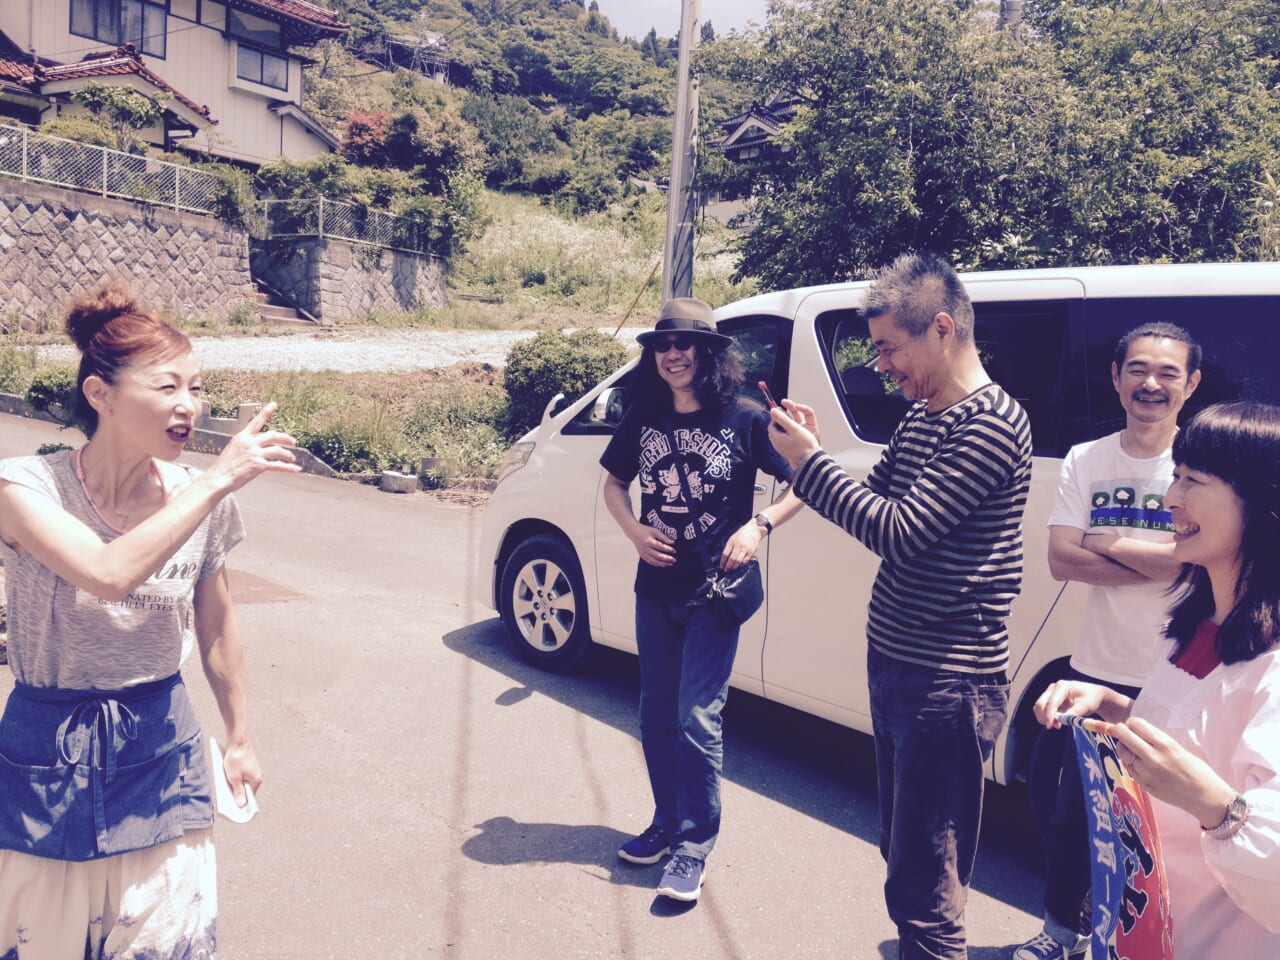 2014年7月7日。糸井さん、みうらじゅんさんとツリーハウス。そしてつなかん。